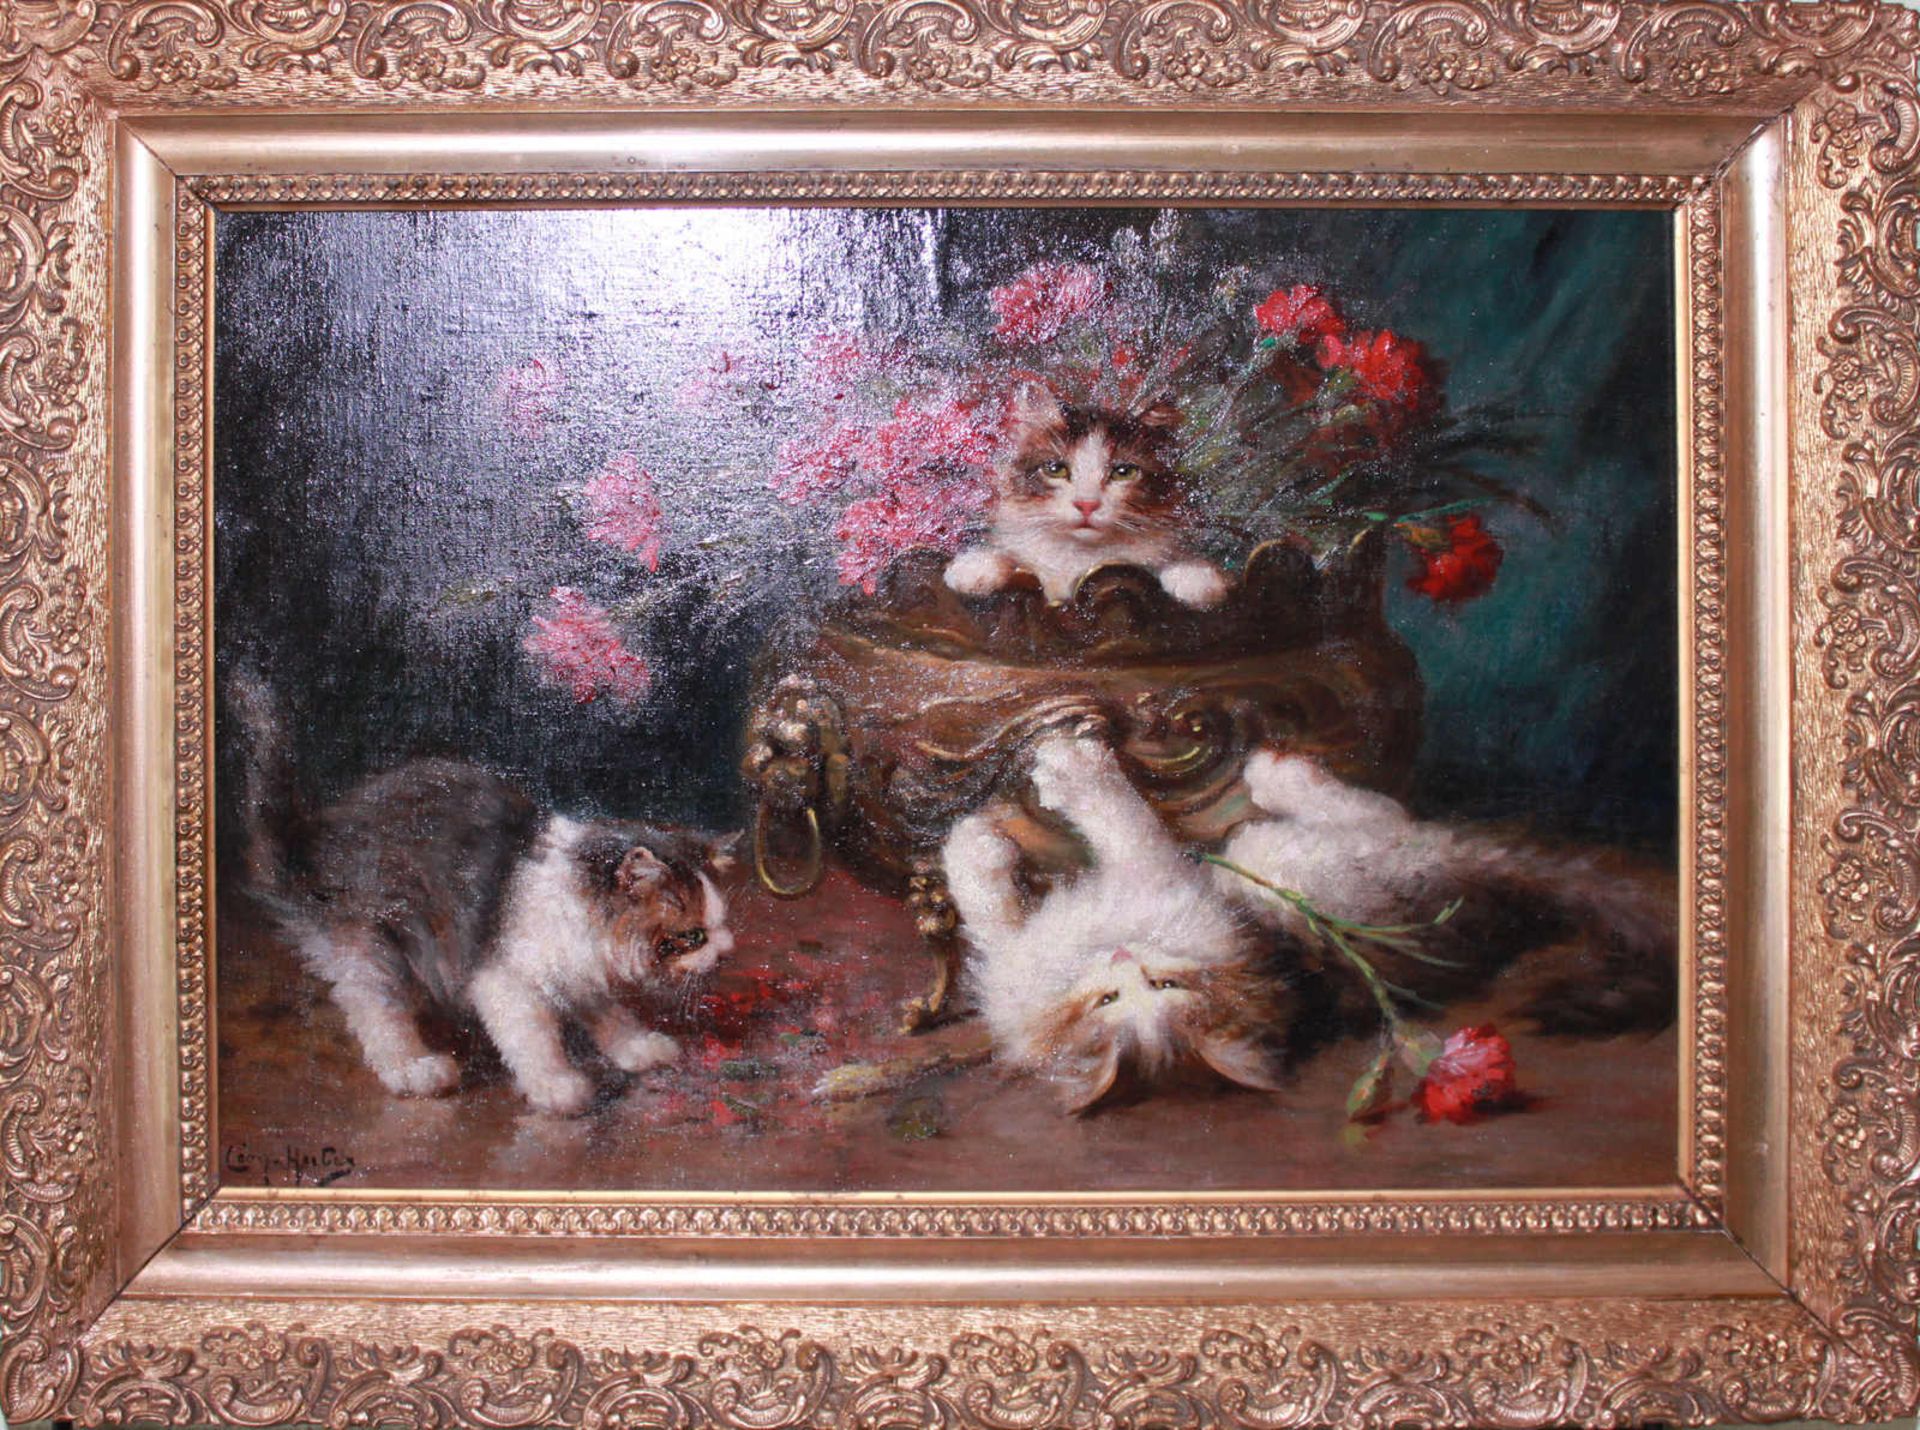 Leon Charles Huber, 1858-1928, Ölgemälde auf Leinwand, "Katzenspiel mit Rosen", links unten Signatur